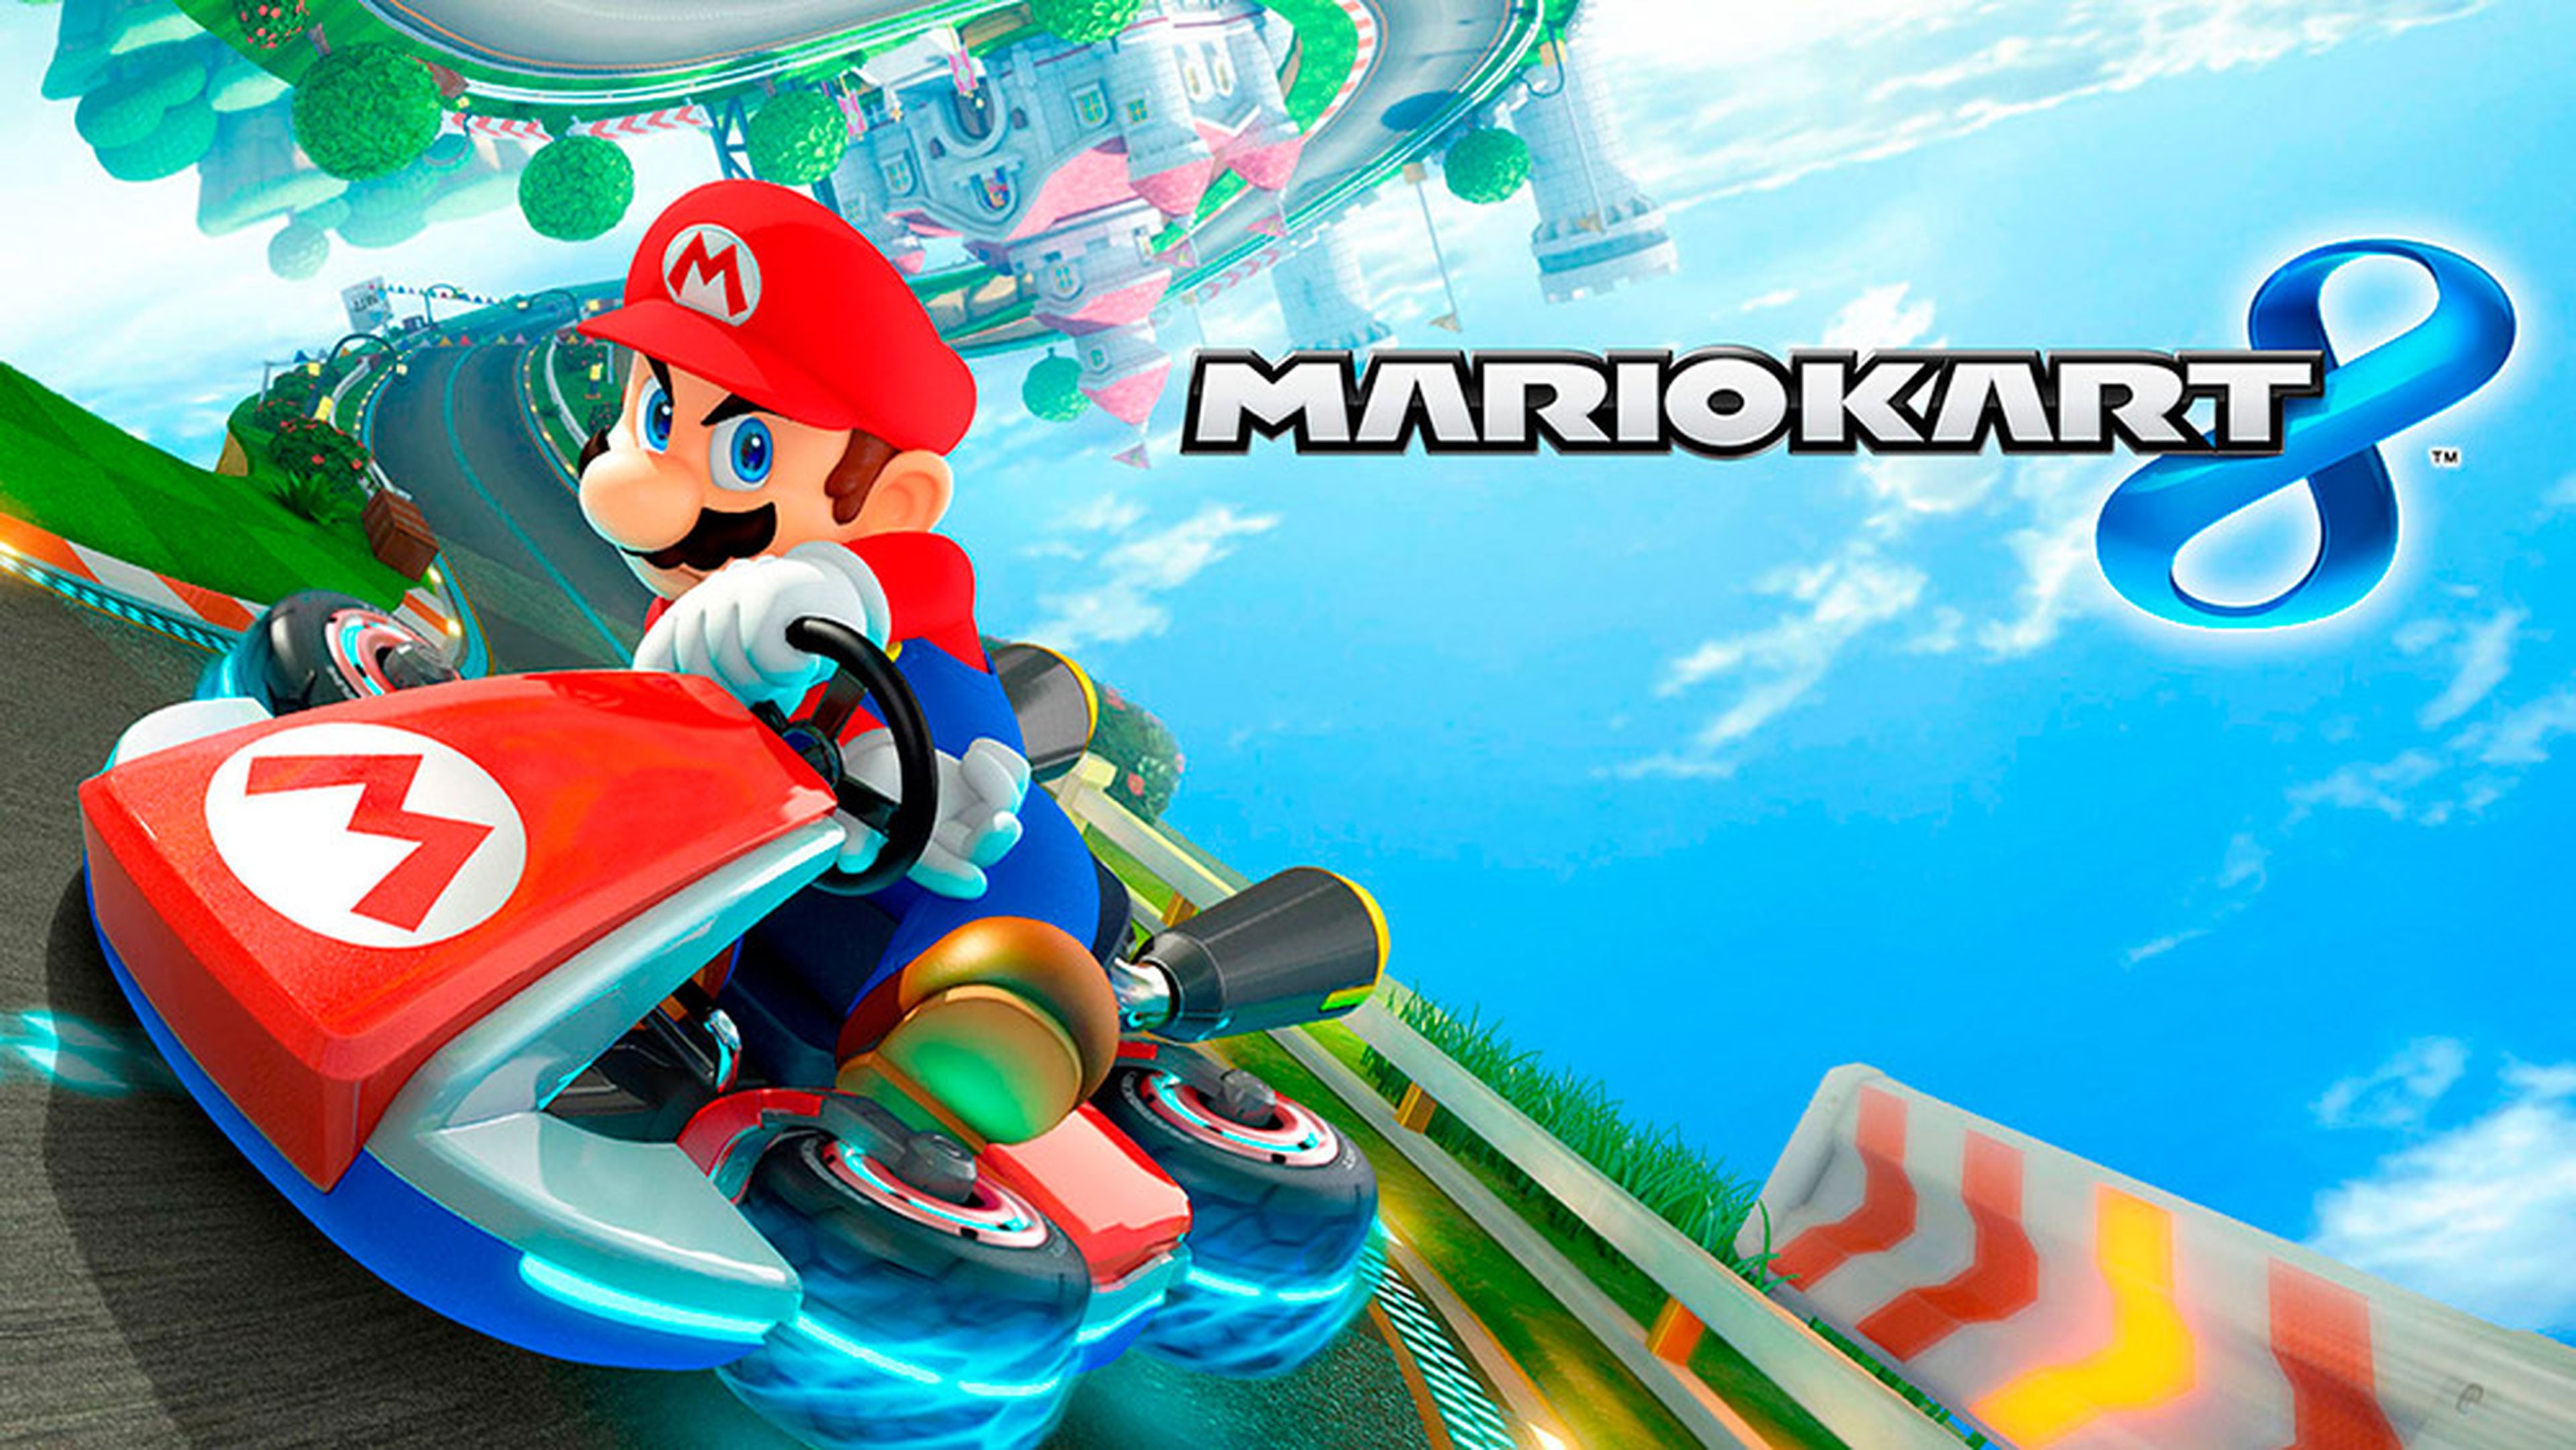 Soul Gaming 2016 celebrará varios torneos de videojuegos como uno de Mario Kart 8, entre otros.